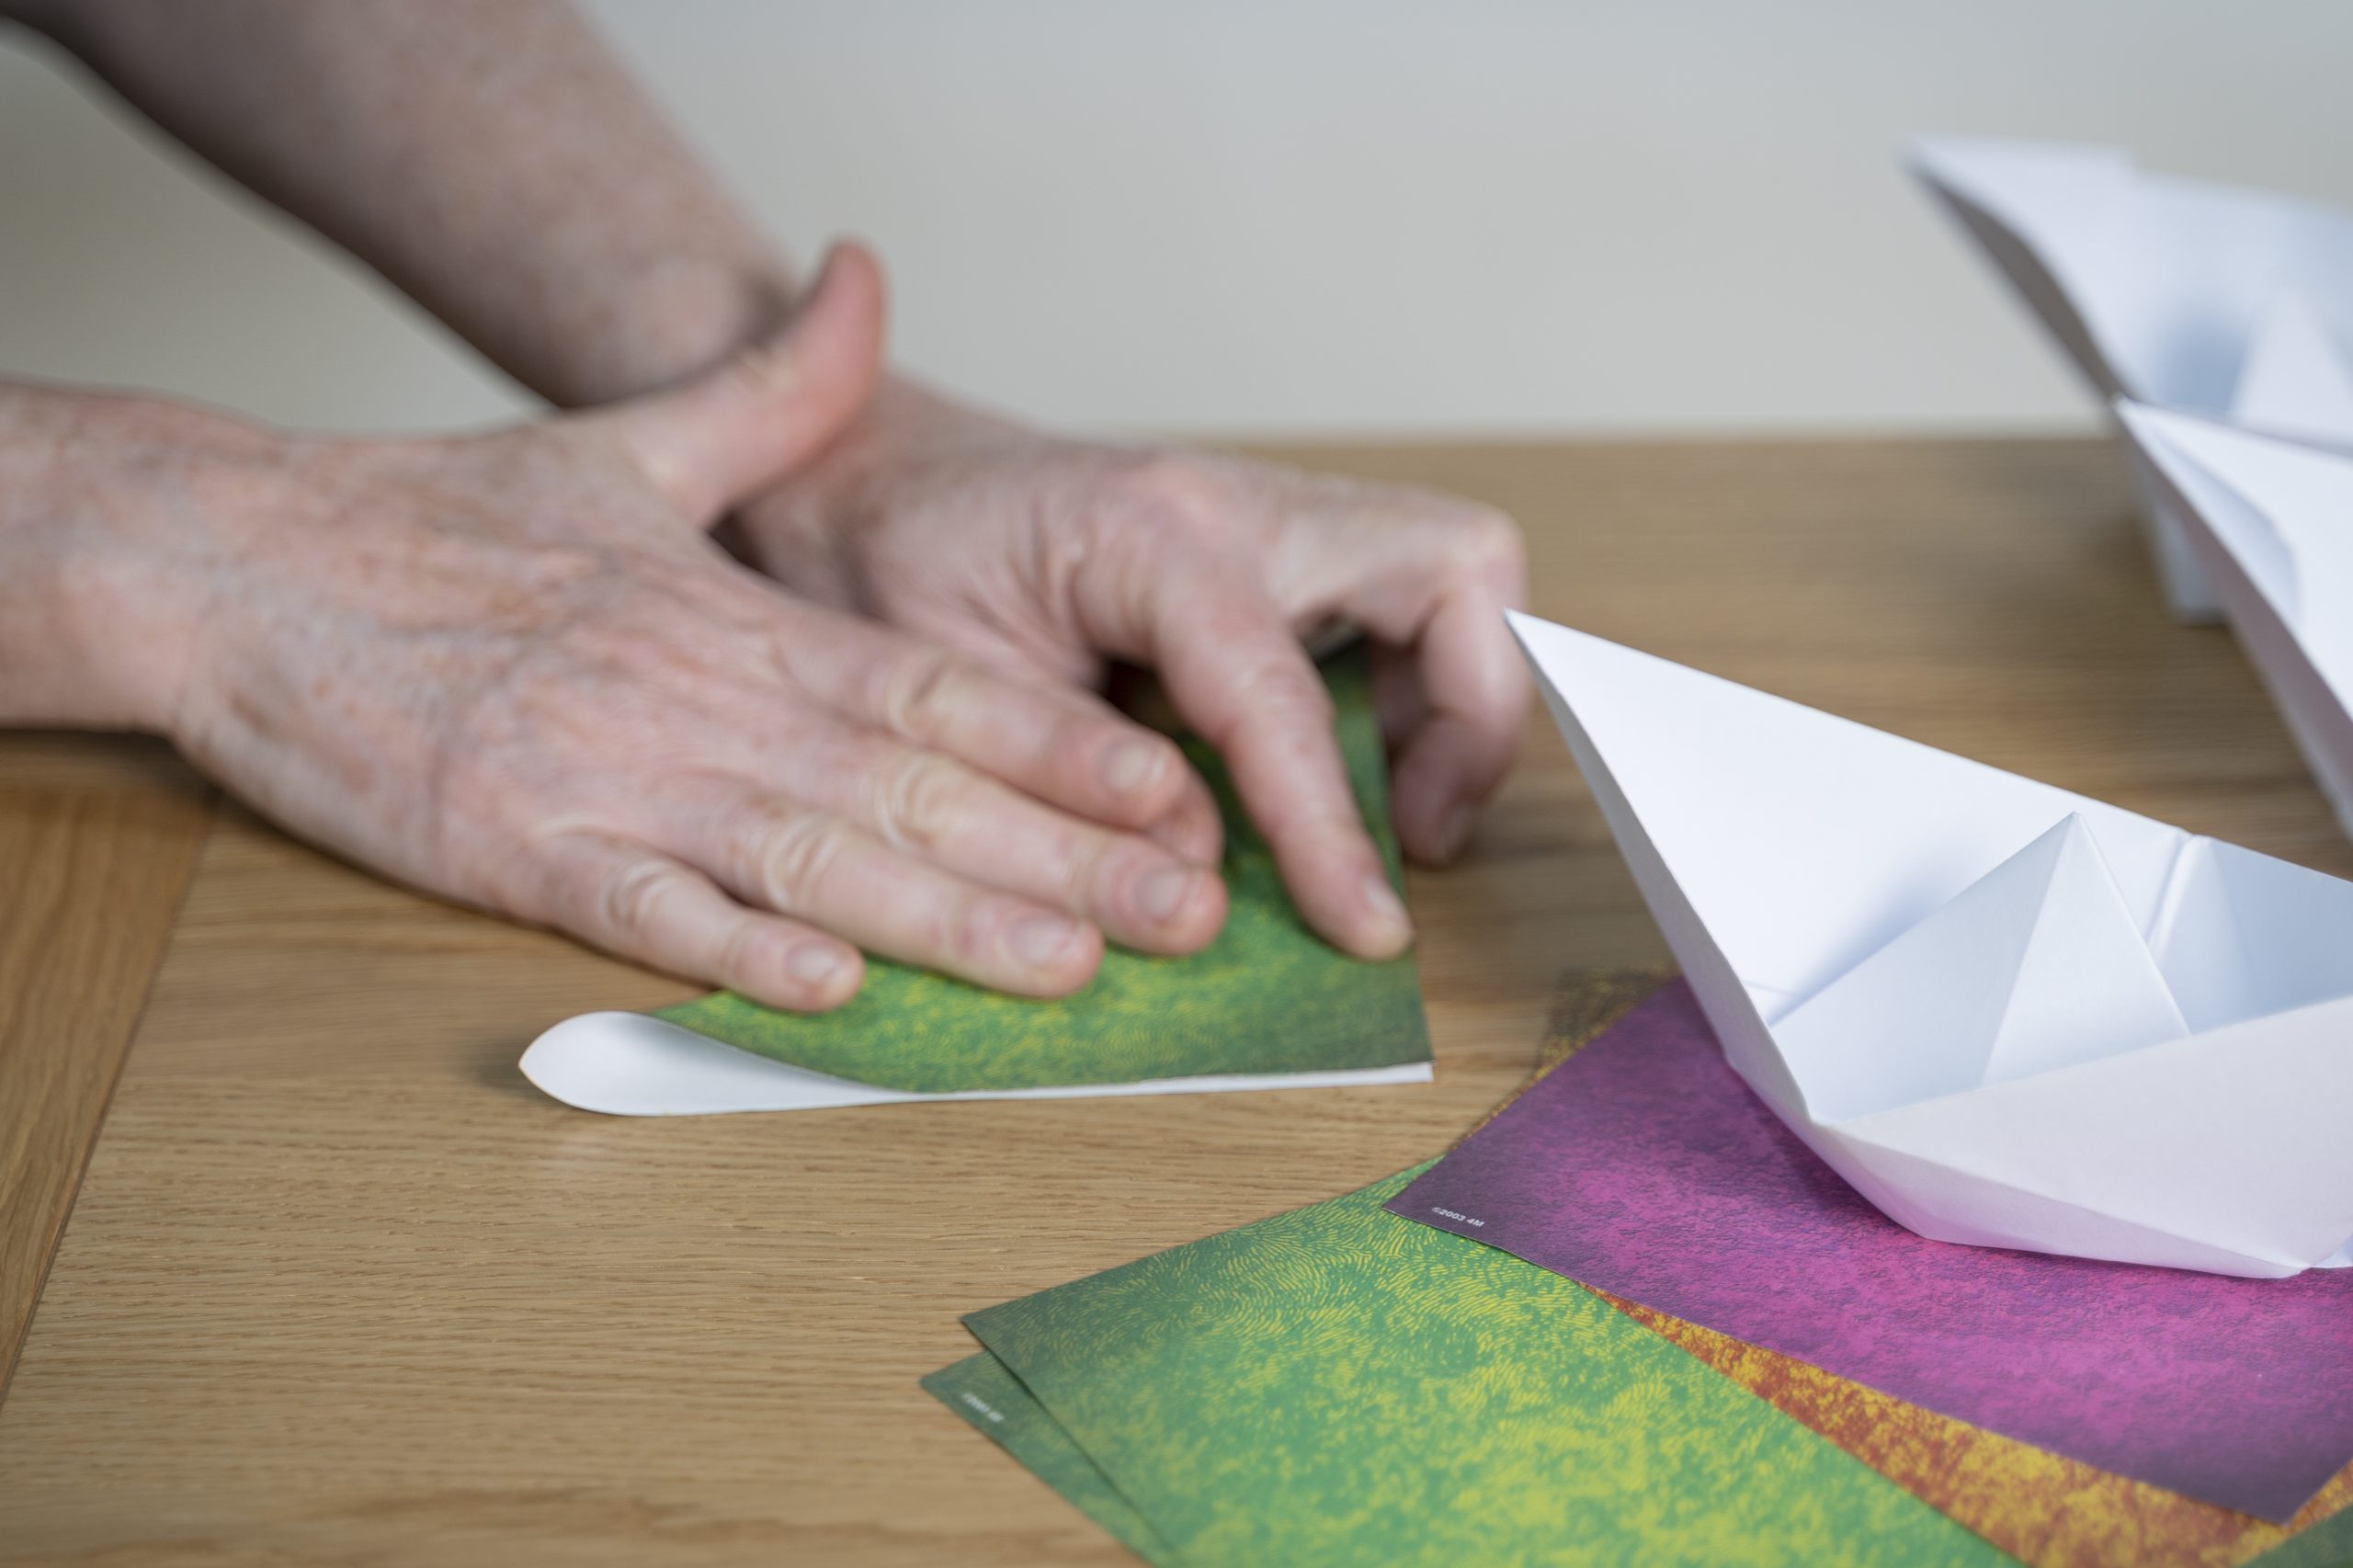 .זוג ידיים מקפלות נייר אוריגמי לצורת משולש. על השולחן ברקע ניירות אוריגמי צבעוניים ולבנים נוספים